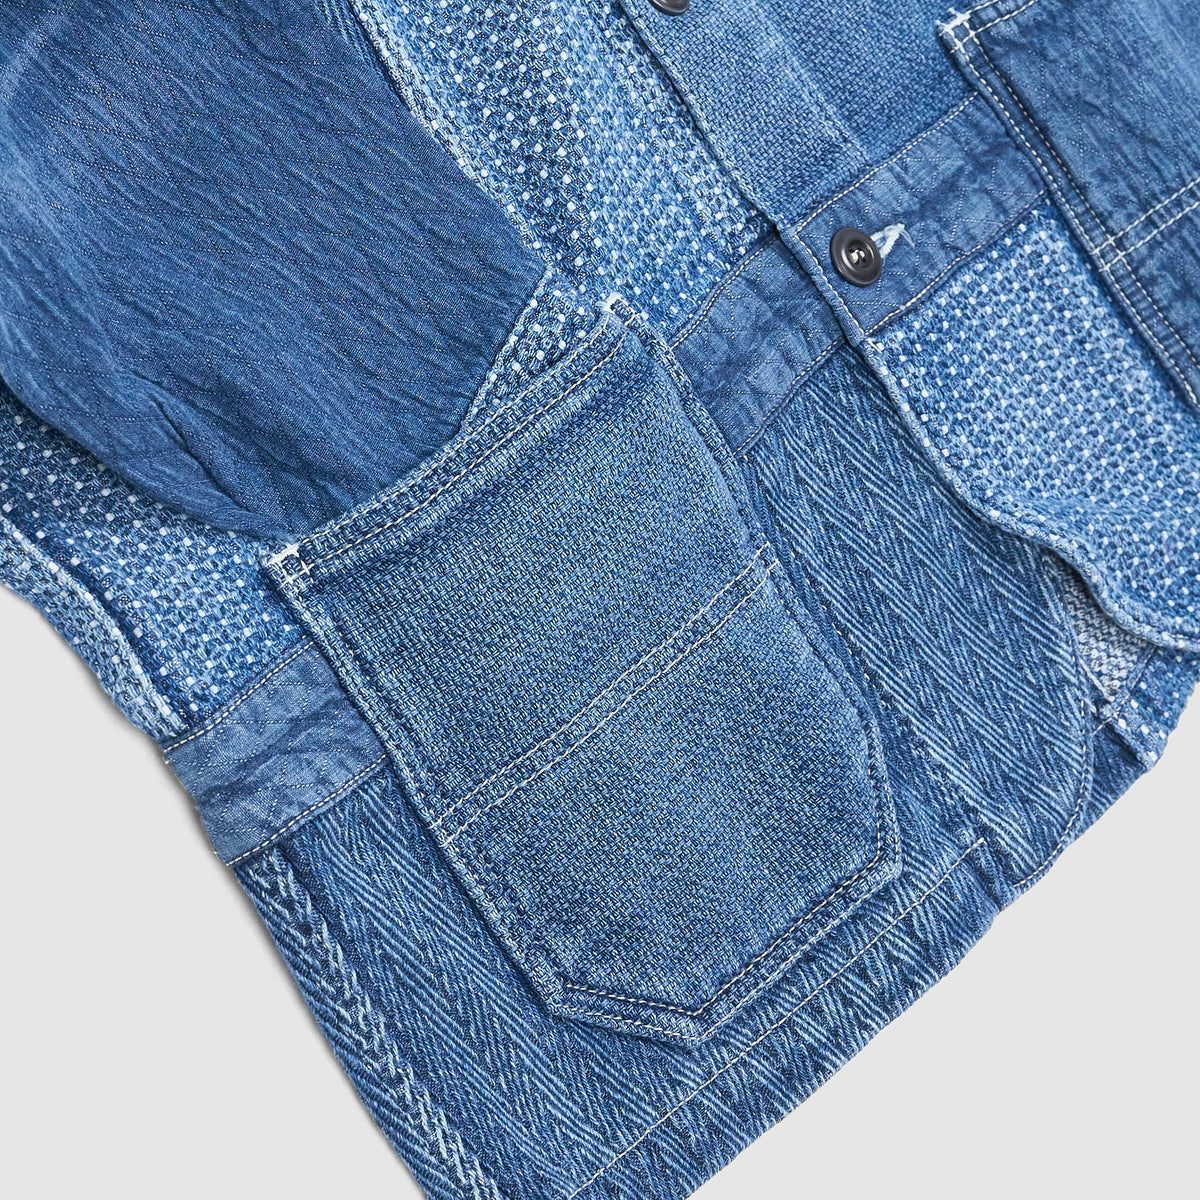 FDMTL Denim Patchwork 3-YR -Washed Denim Blazer Jacket